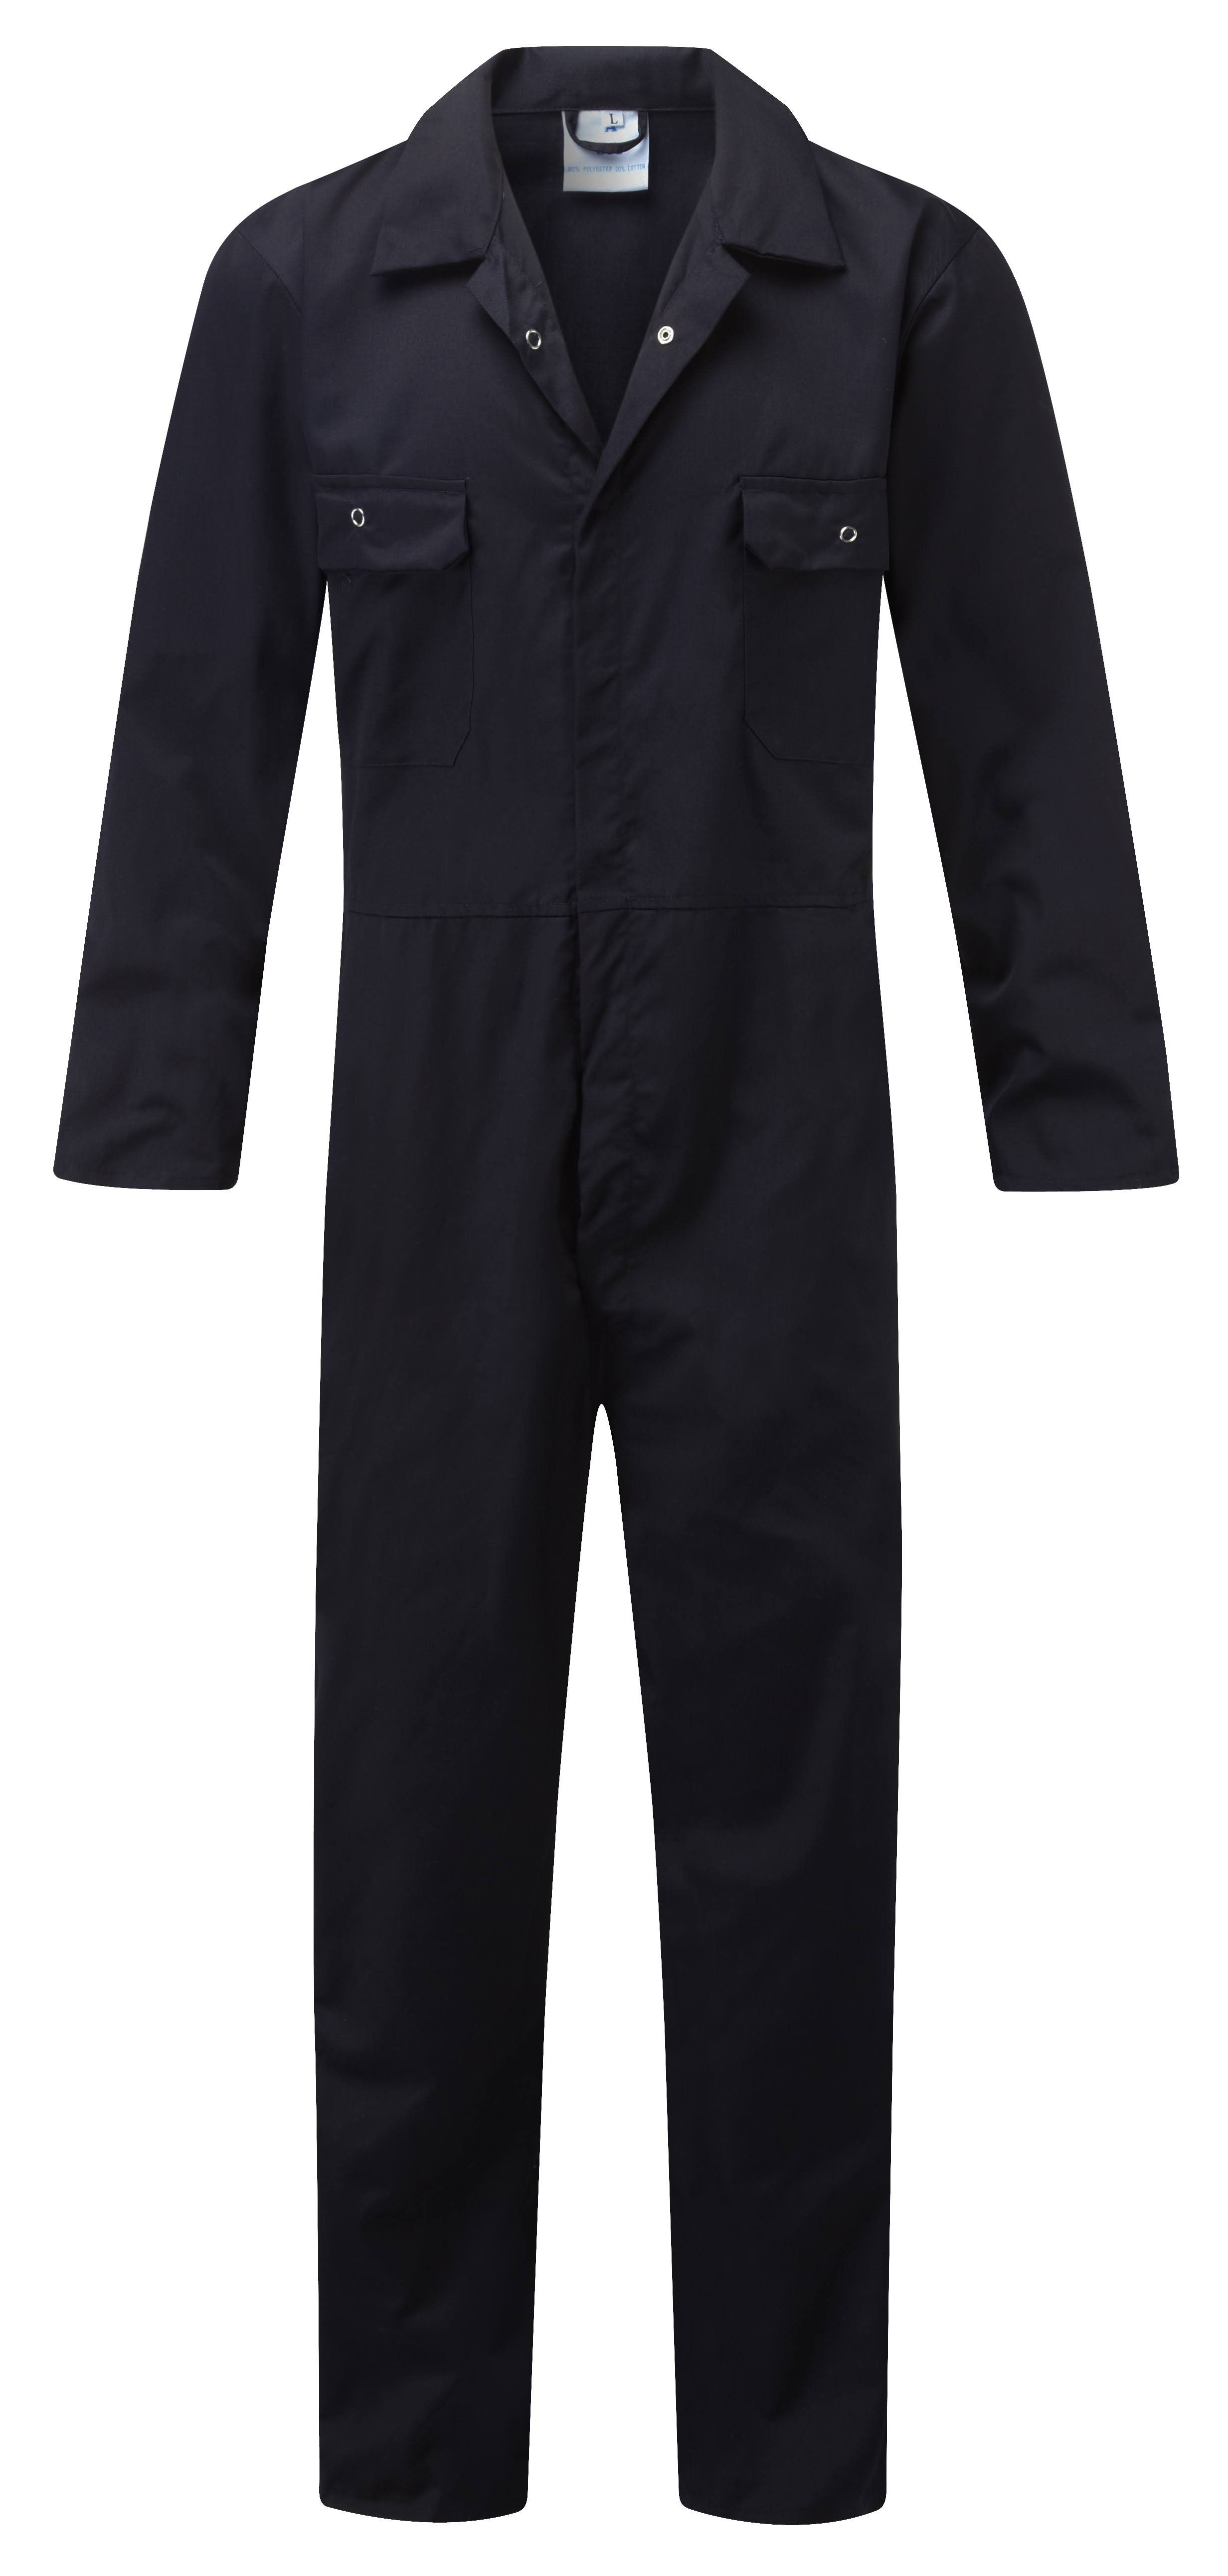 Fort 318 Workforce Boiler Suit, Navy Blue, Size Large